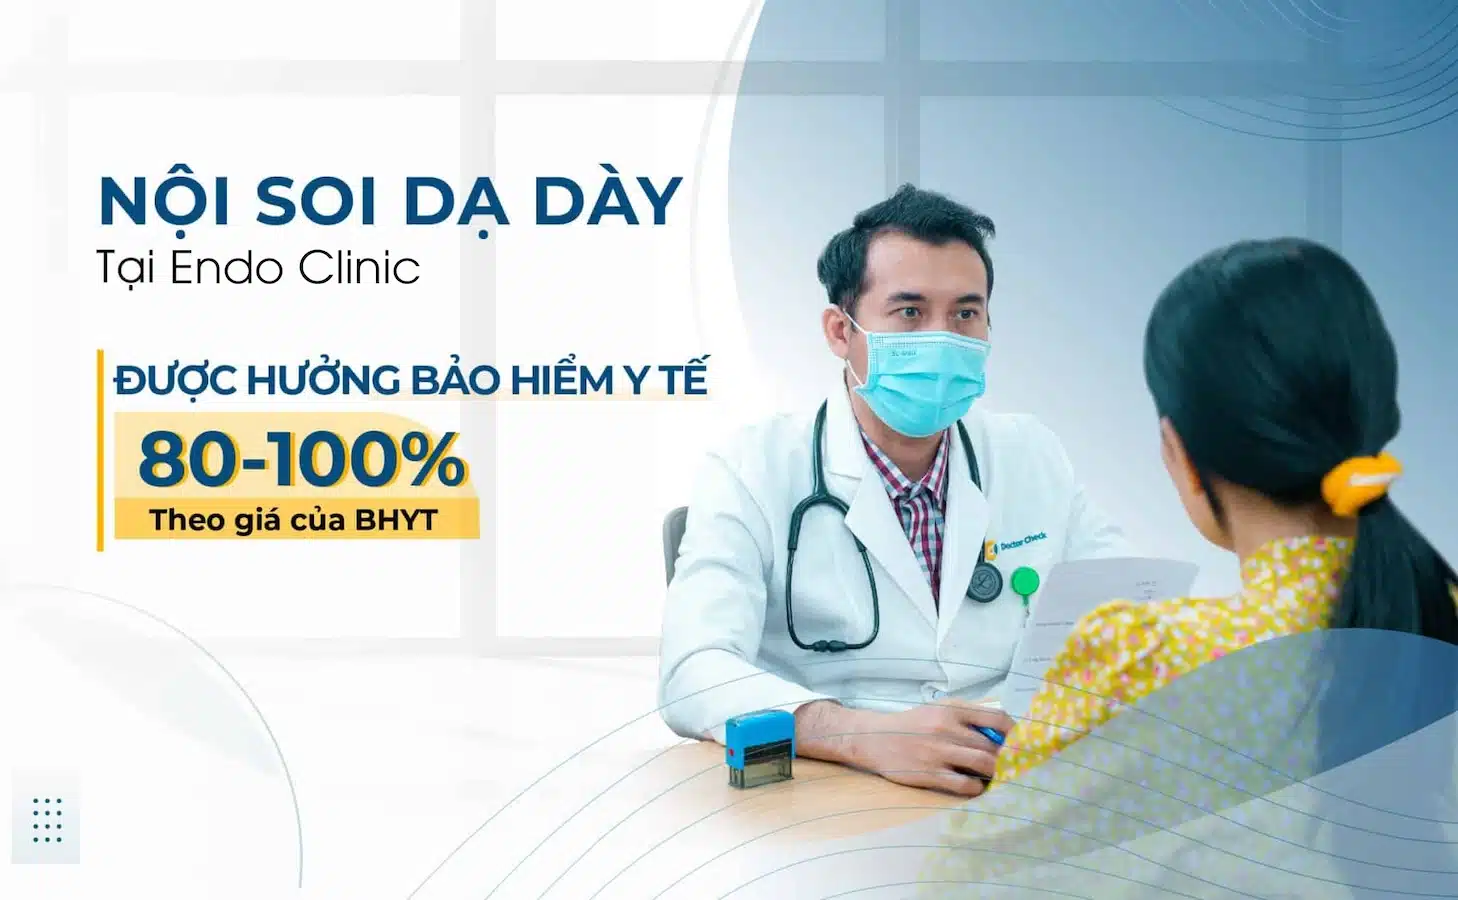 Nội Soi Dạ Dày Tại Endo Clinic Được Hưởng Bảo Hiểm Y Tế Từ 80 - 100% Theo Giá Bảo Hiểm Y Tế